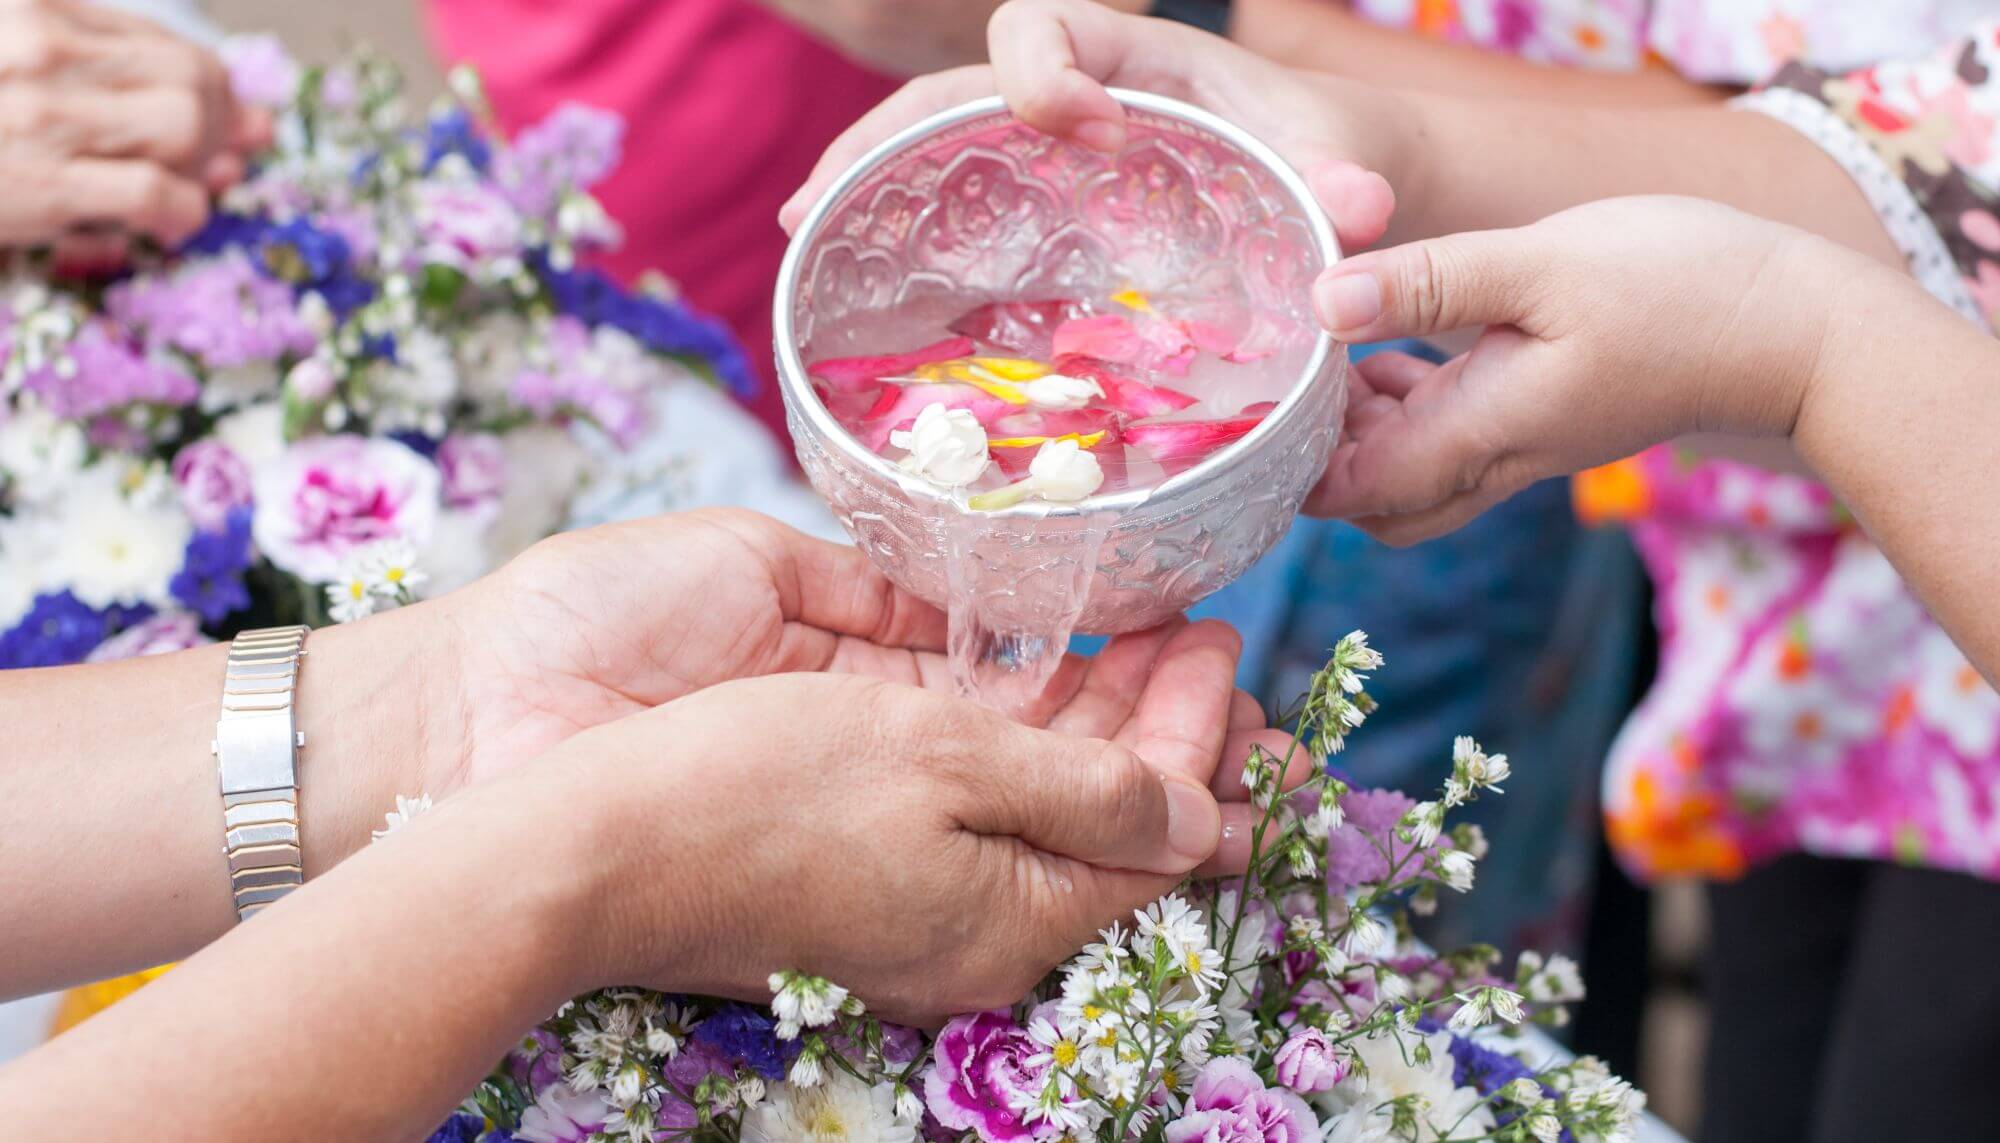 jovem derramando água com flores nas mãos de um homem adulto festival Songkran ano novo tailandes